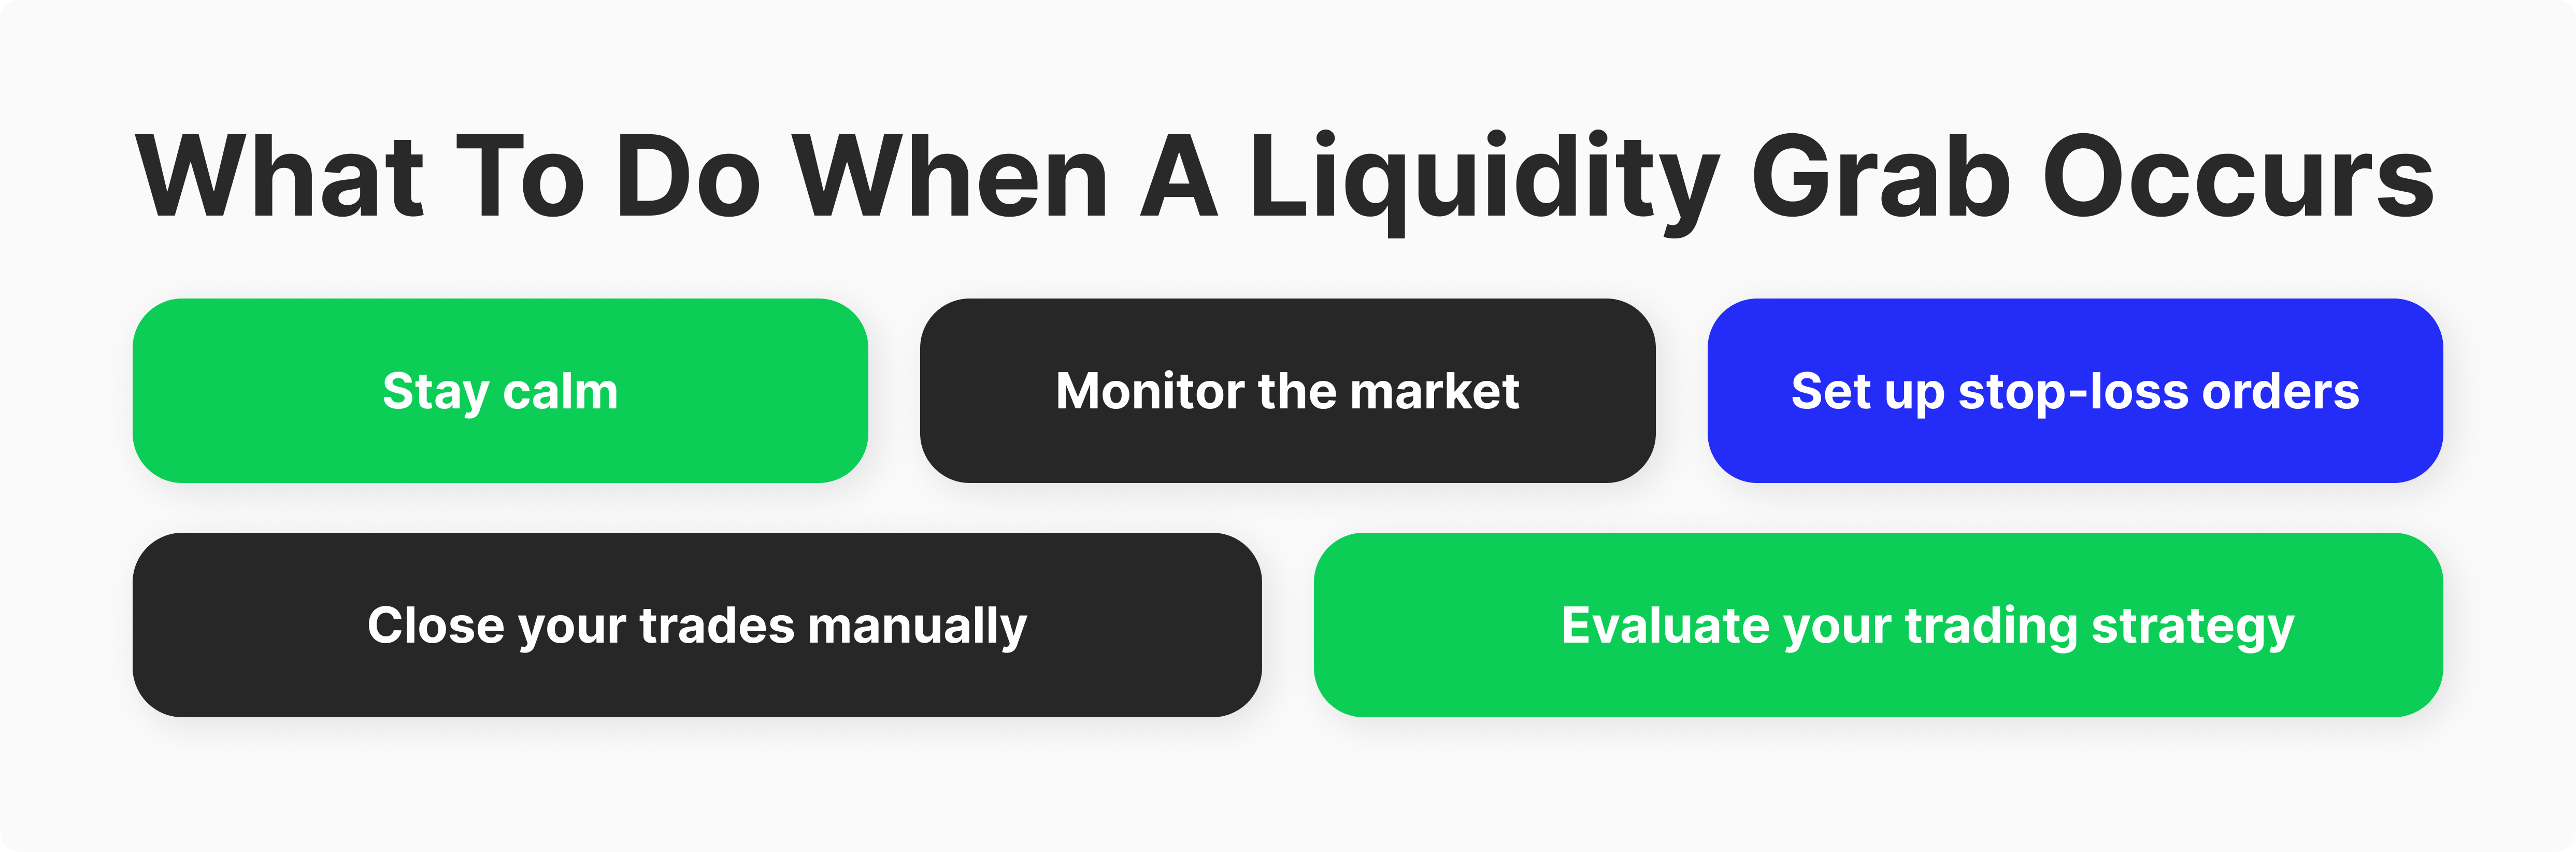  how to avoid liquidity grabs